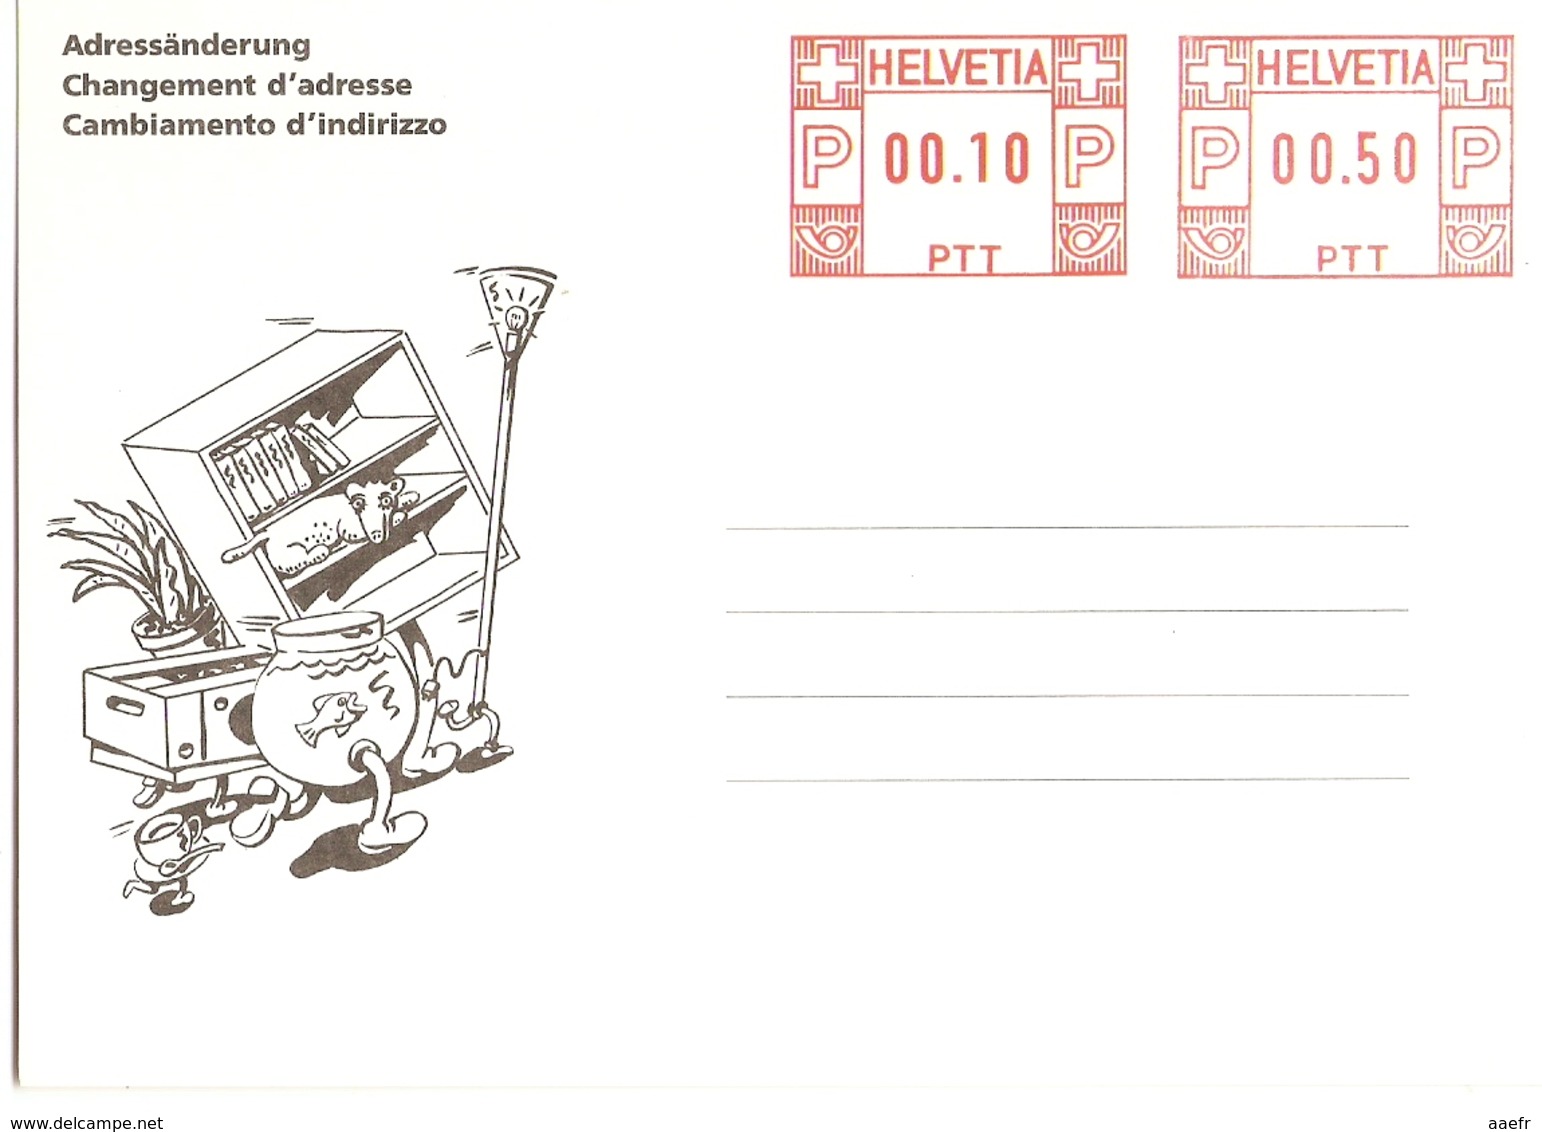 Suisse 1991 - Carte Neuve De Changement D'adresse - Adressäderung - Cambiamento D'indirizzo - PTT 212.06 (100 153) - Entiers Postaux